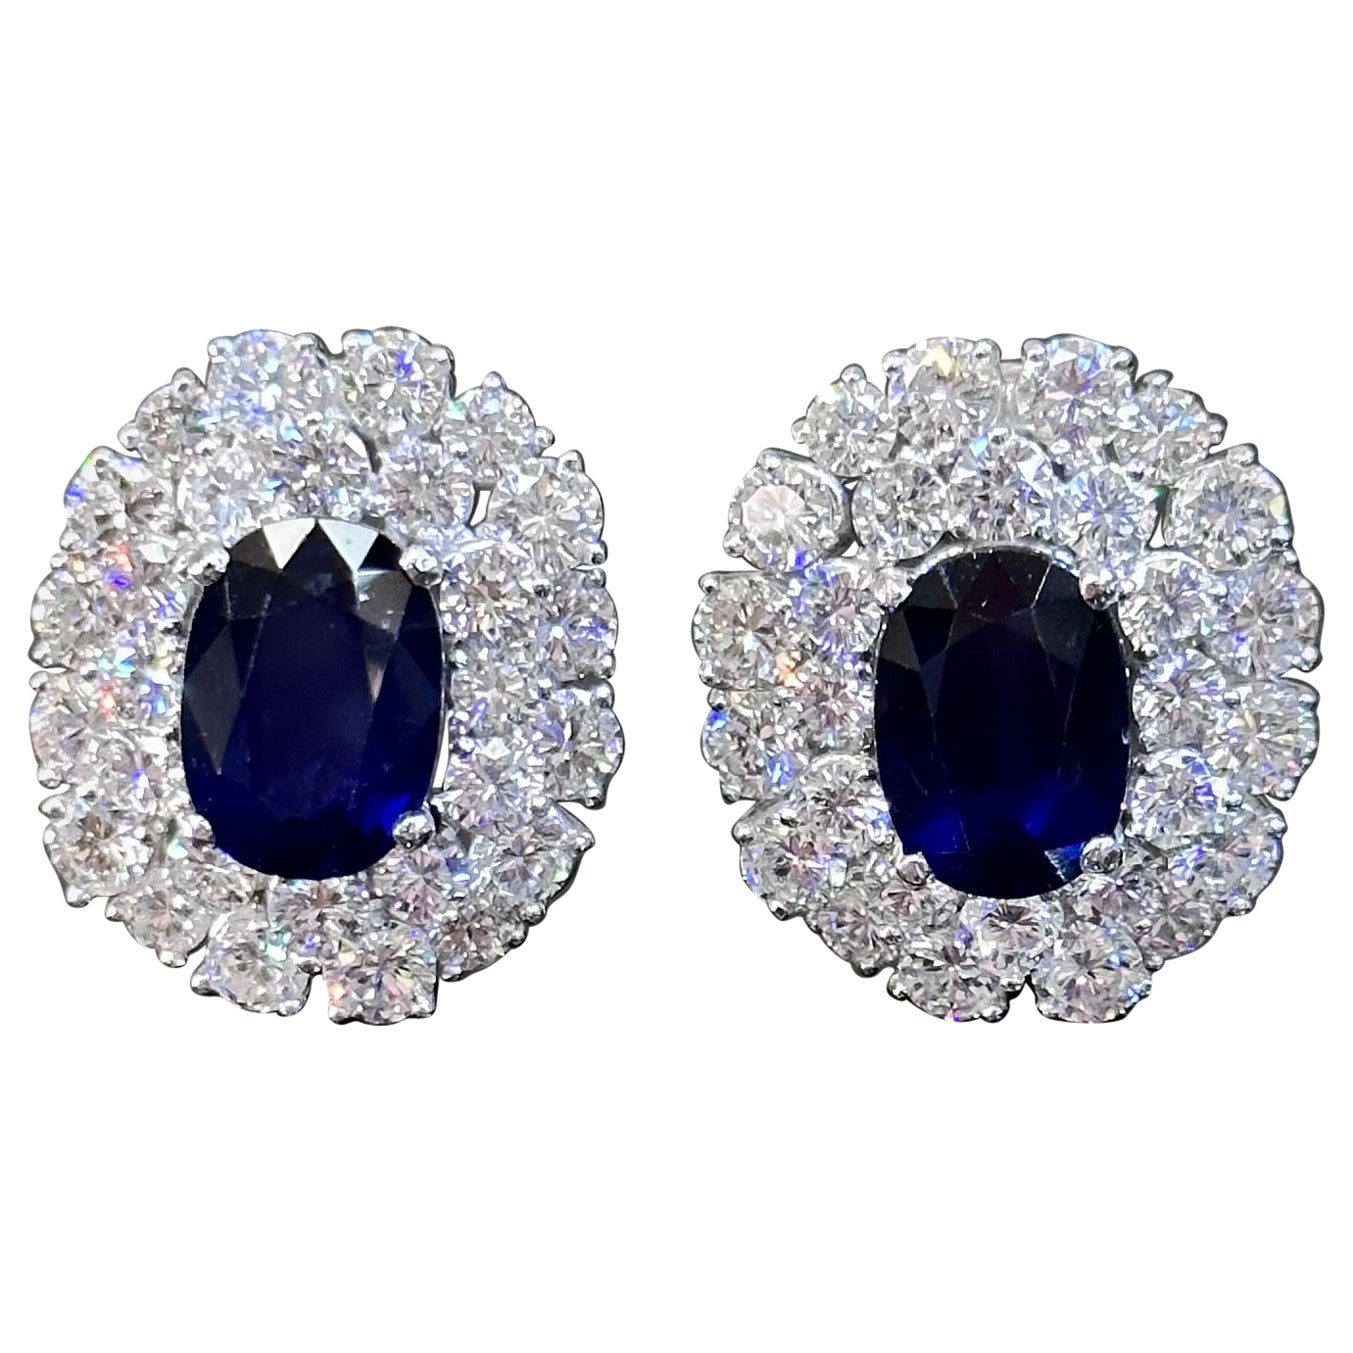 Boucles d'oreilles françaises en or et platine avec saphir bleu royal et diamants, années 1950/1960